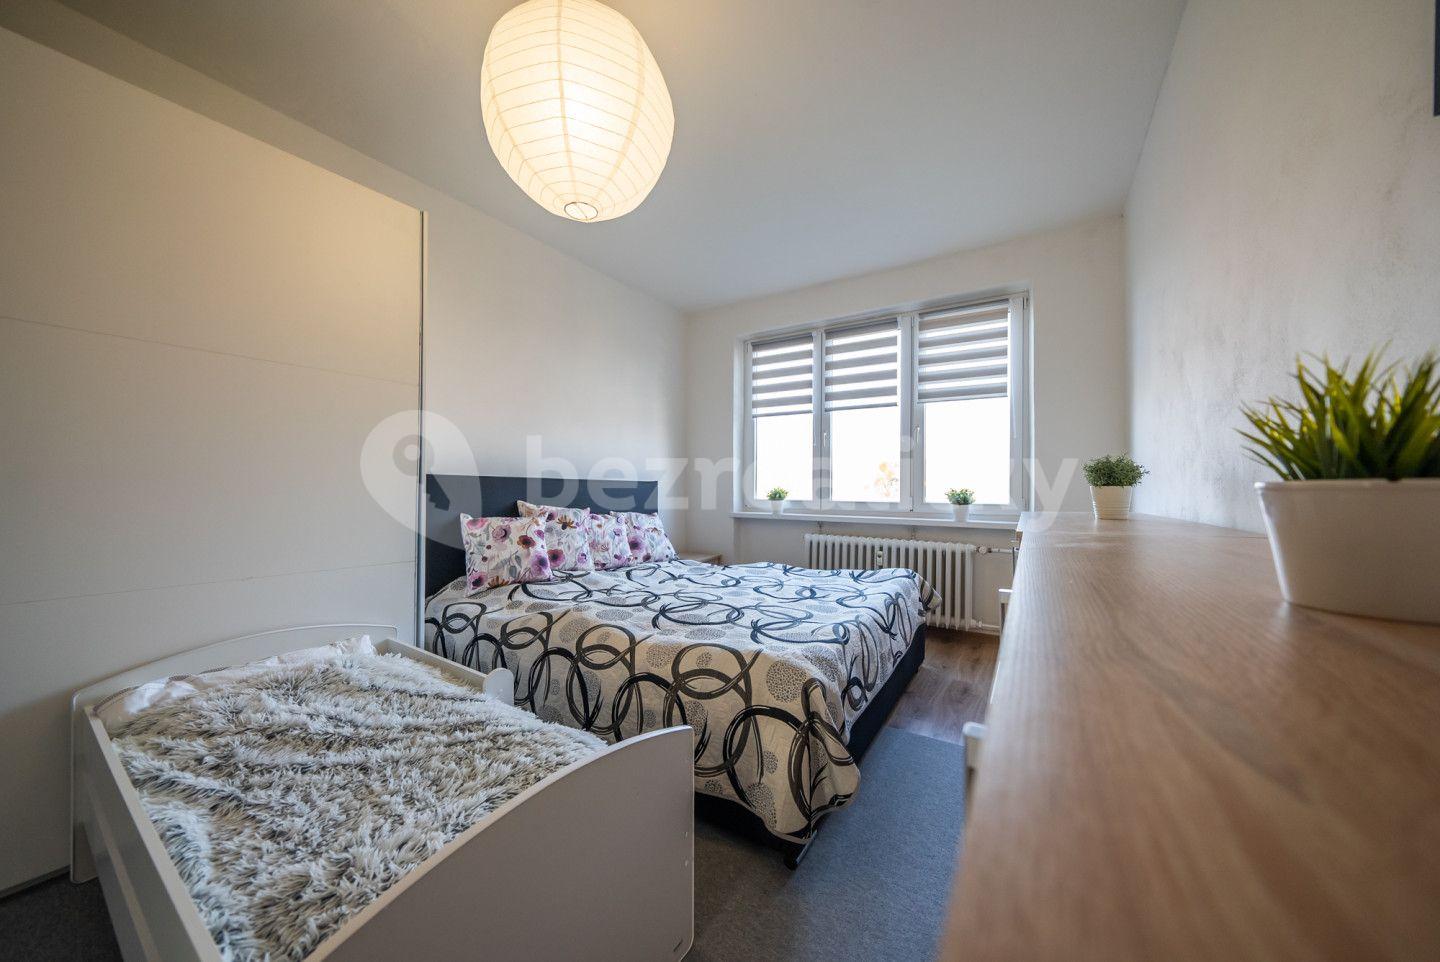 2 bedroom flat for sale, 55 m², Lidická, Třinec, Moravskoslezský Region